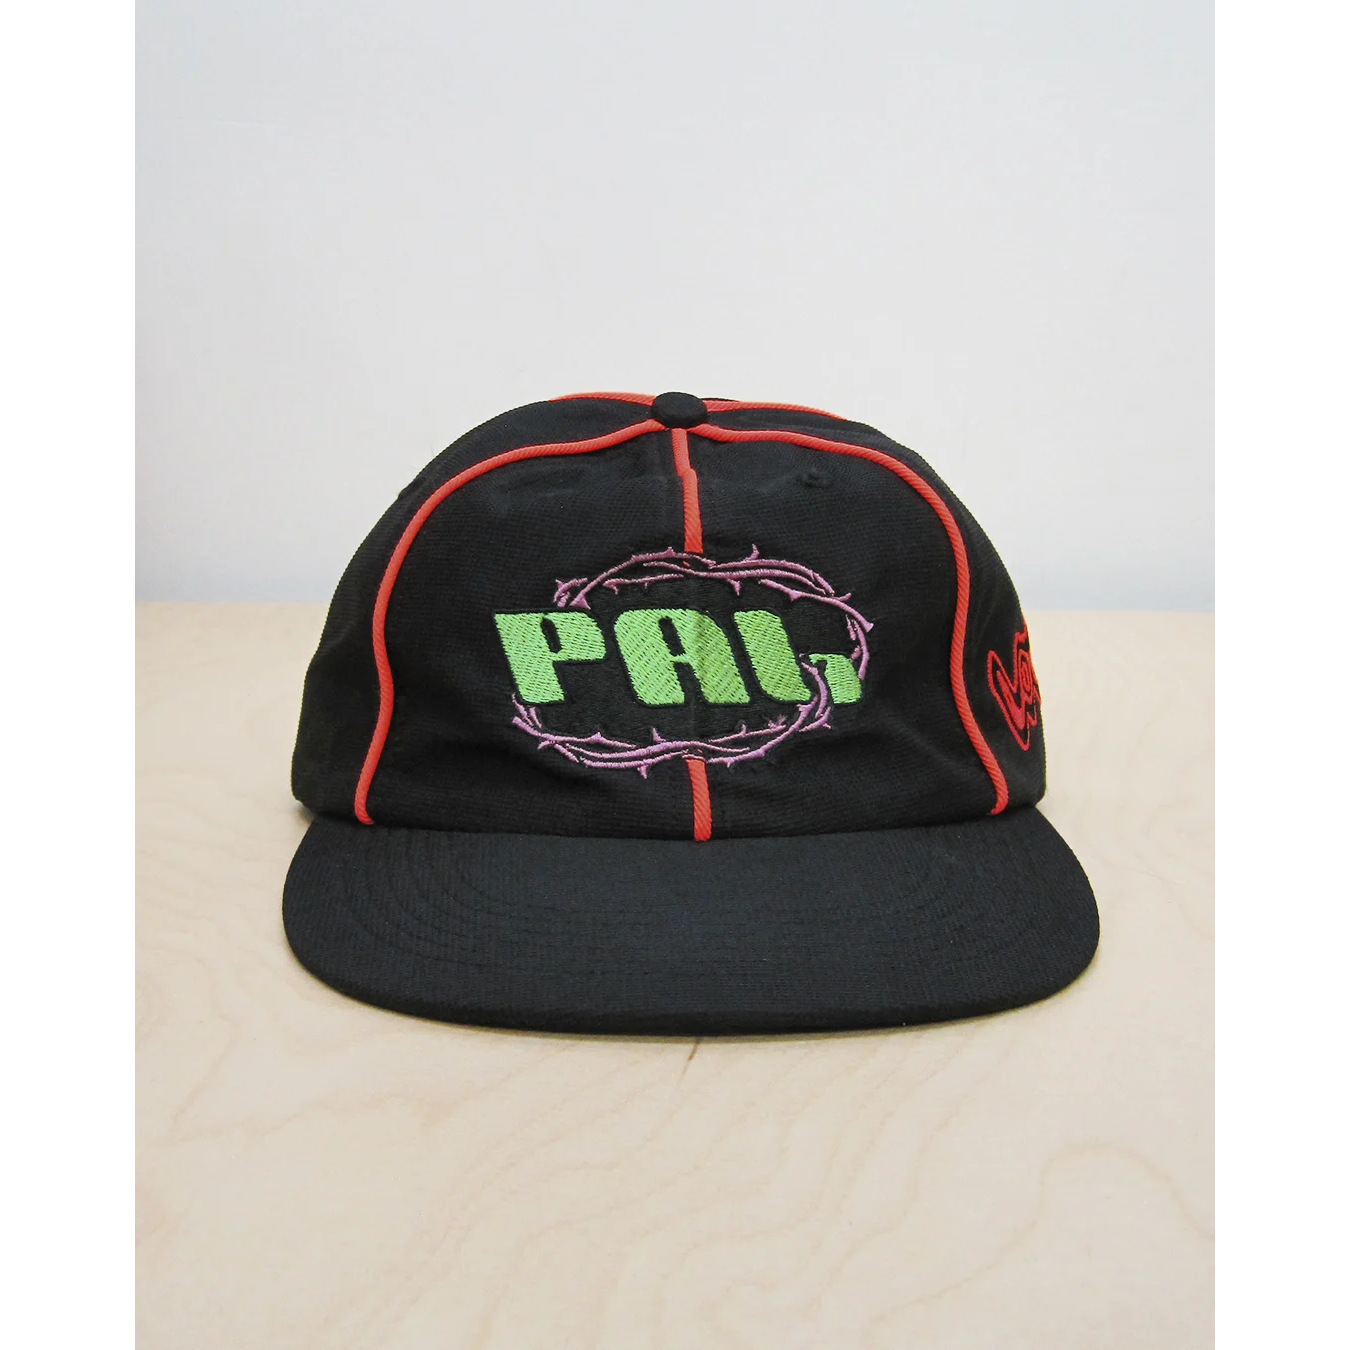 PAL OFF LIMITS hat